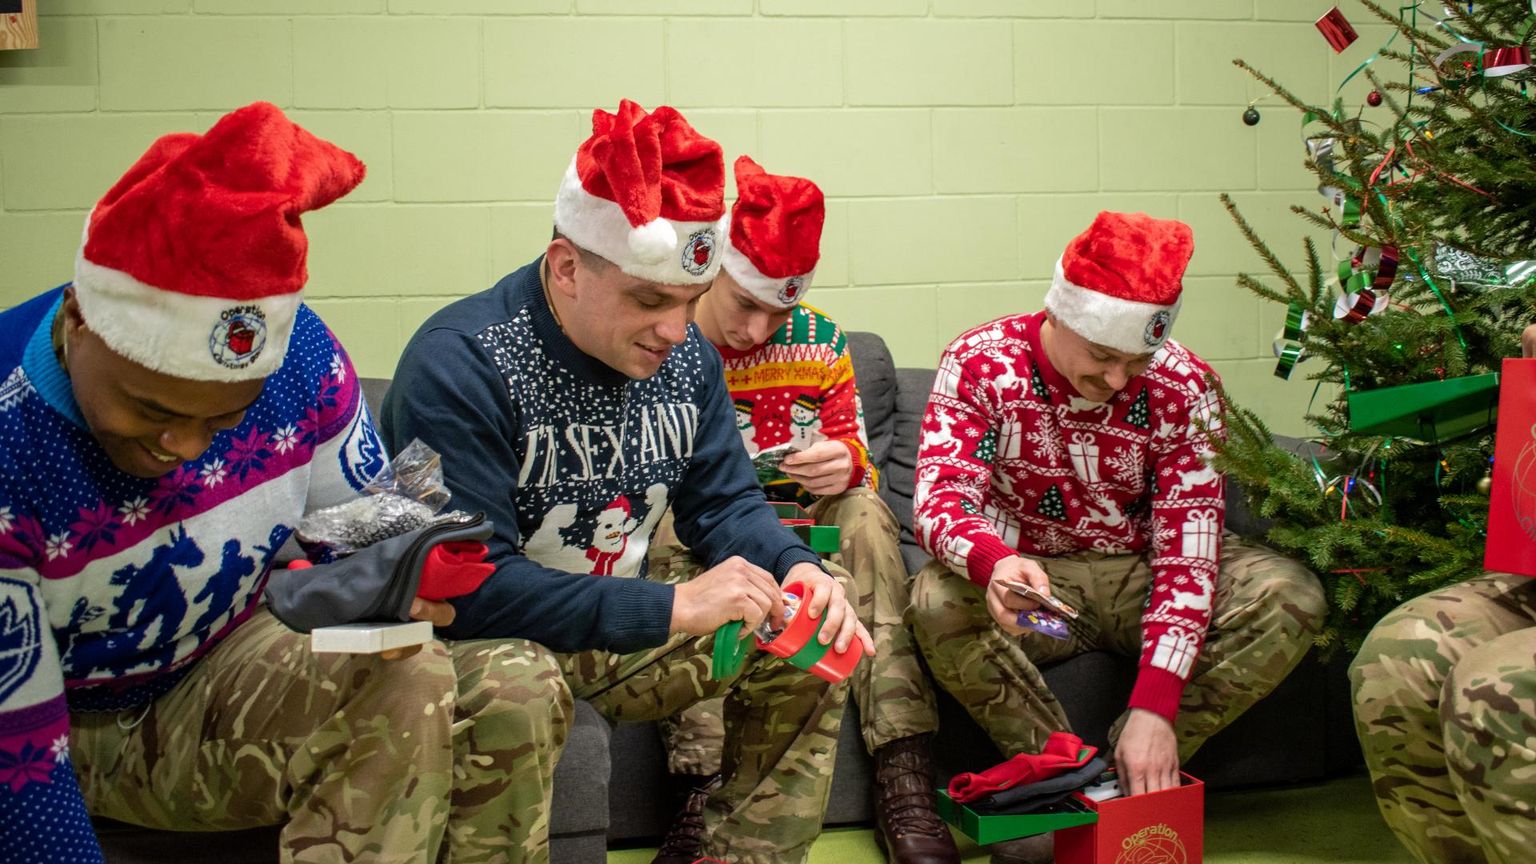 Heategevusaktsioonil “Operation Christmas” kogunenud pakid on jõudnud sõduriteni.